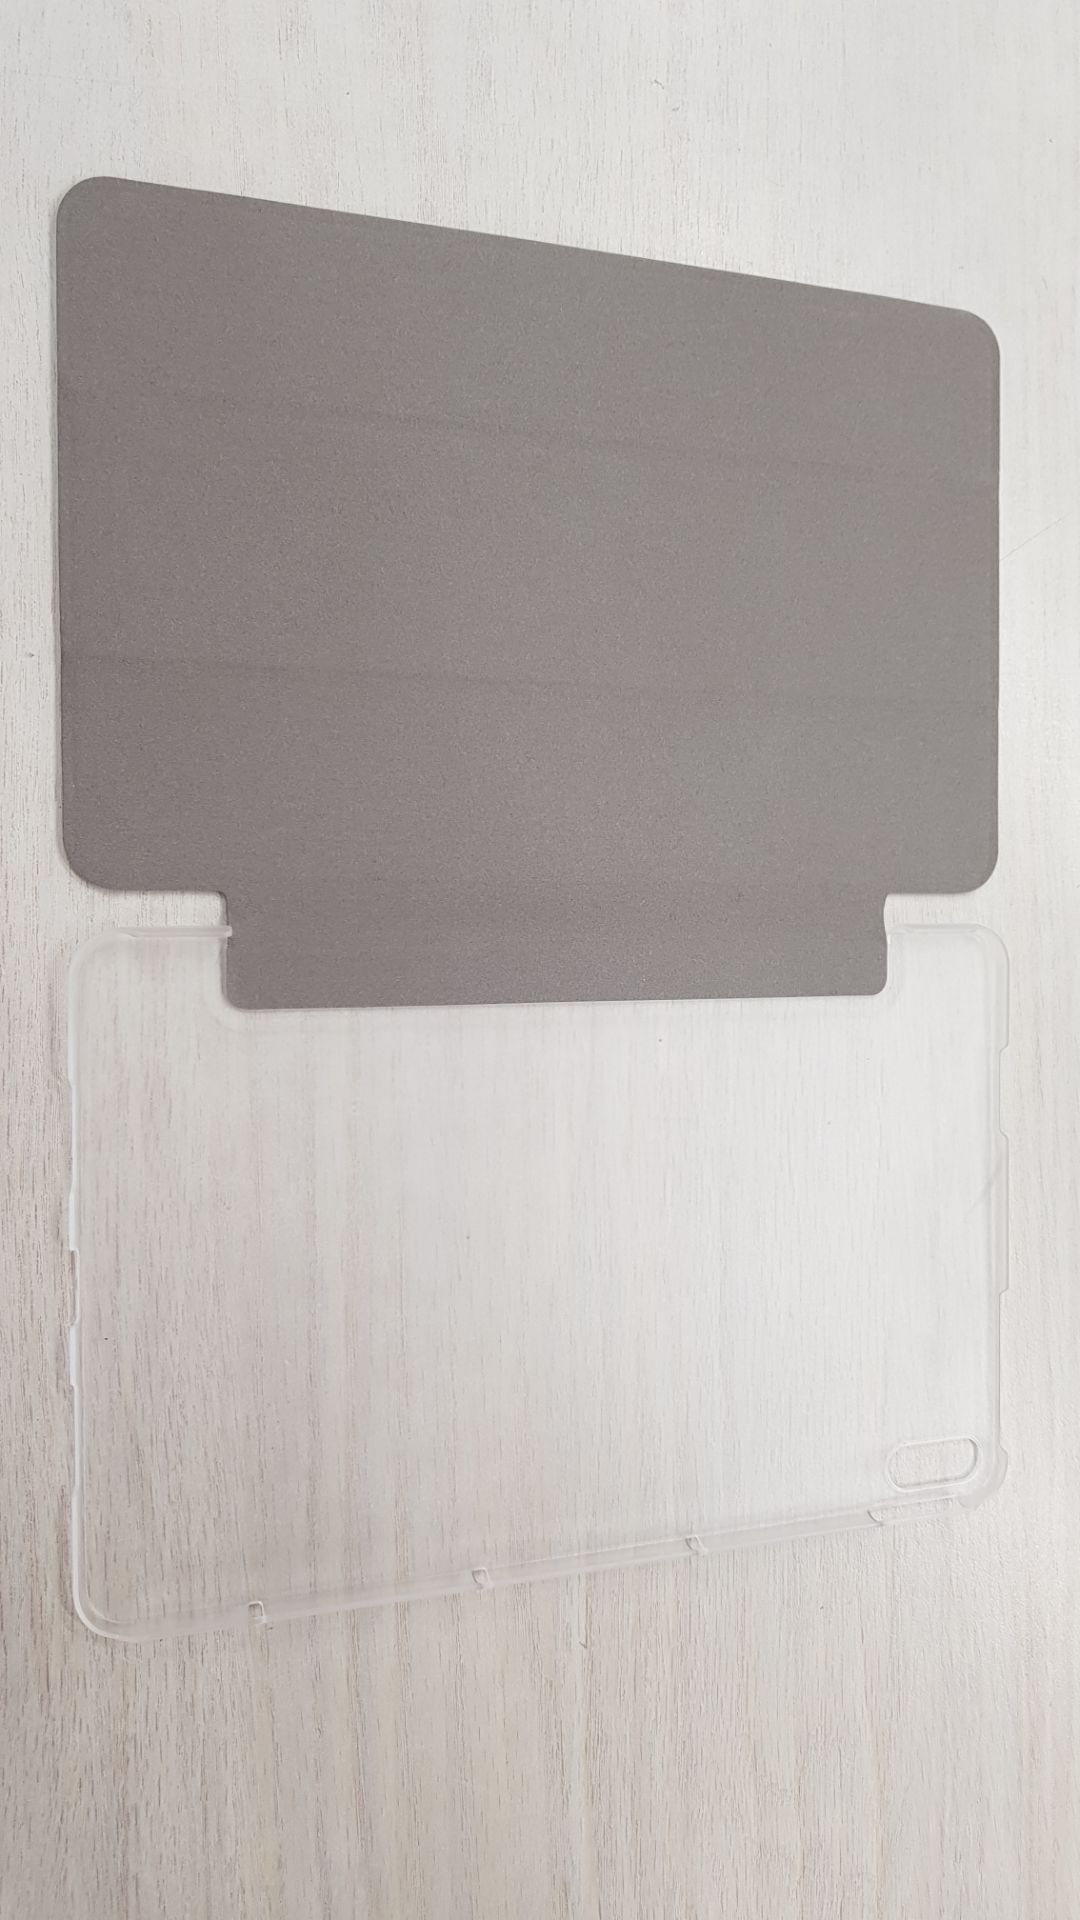 Чехол Zibelino для Huawei MatePad Pro 10.8 с магнитом Black ZT-HUW-PP-10.8-BLK отличное состояние - фото 3